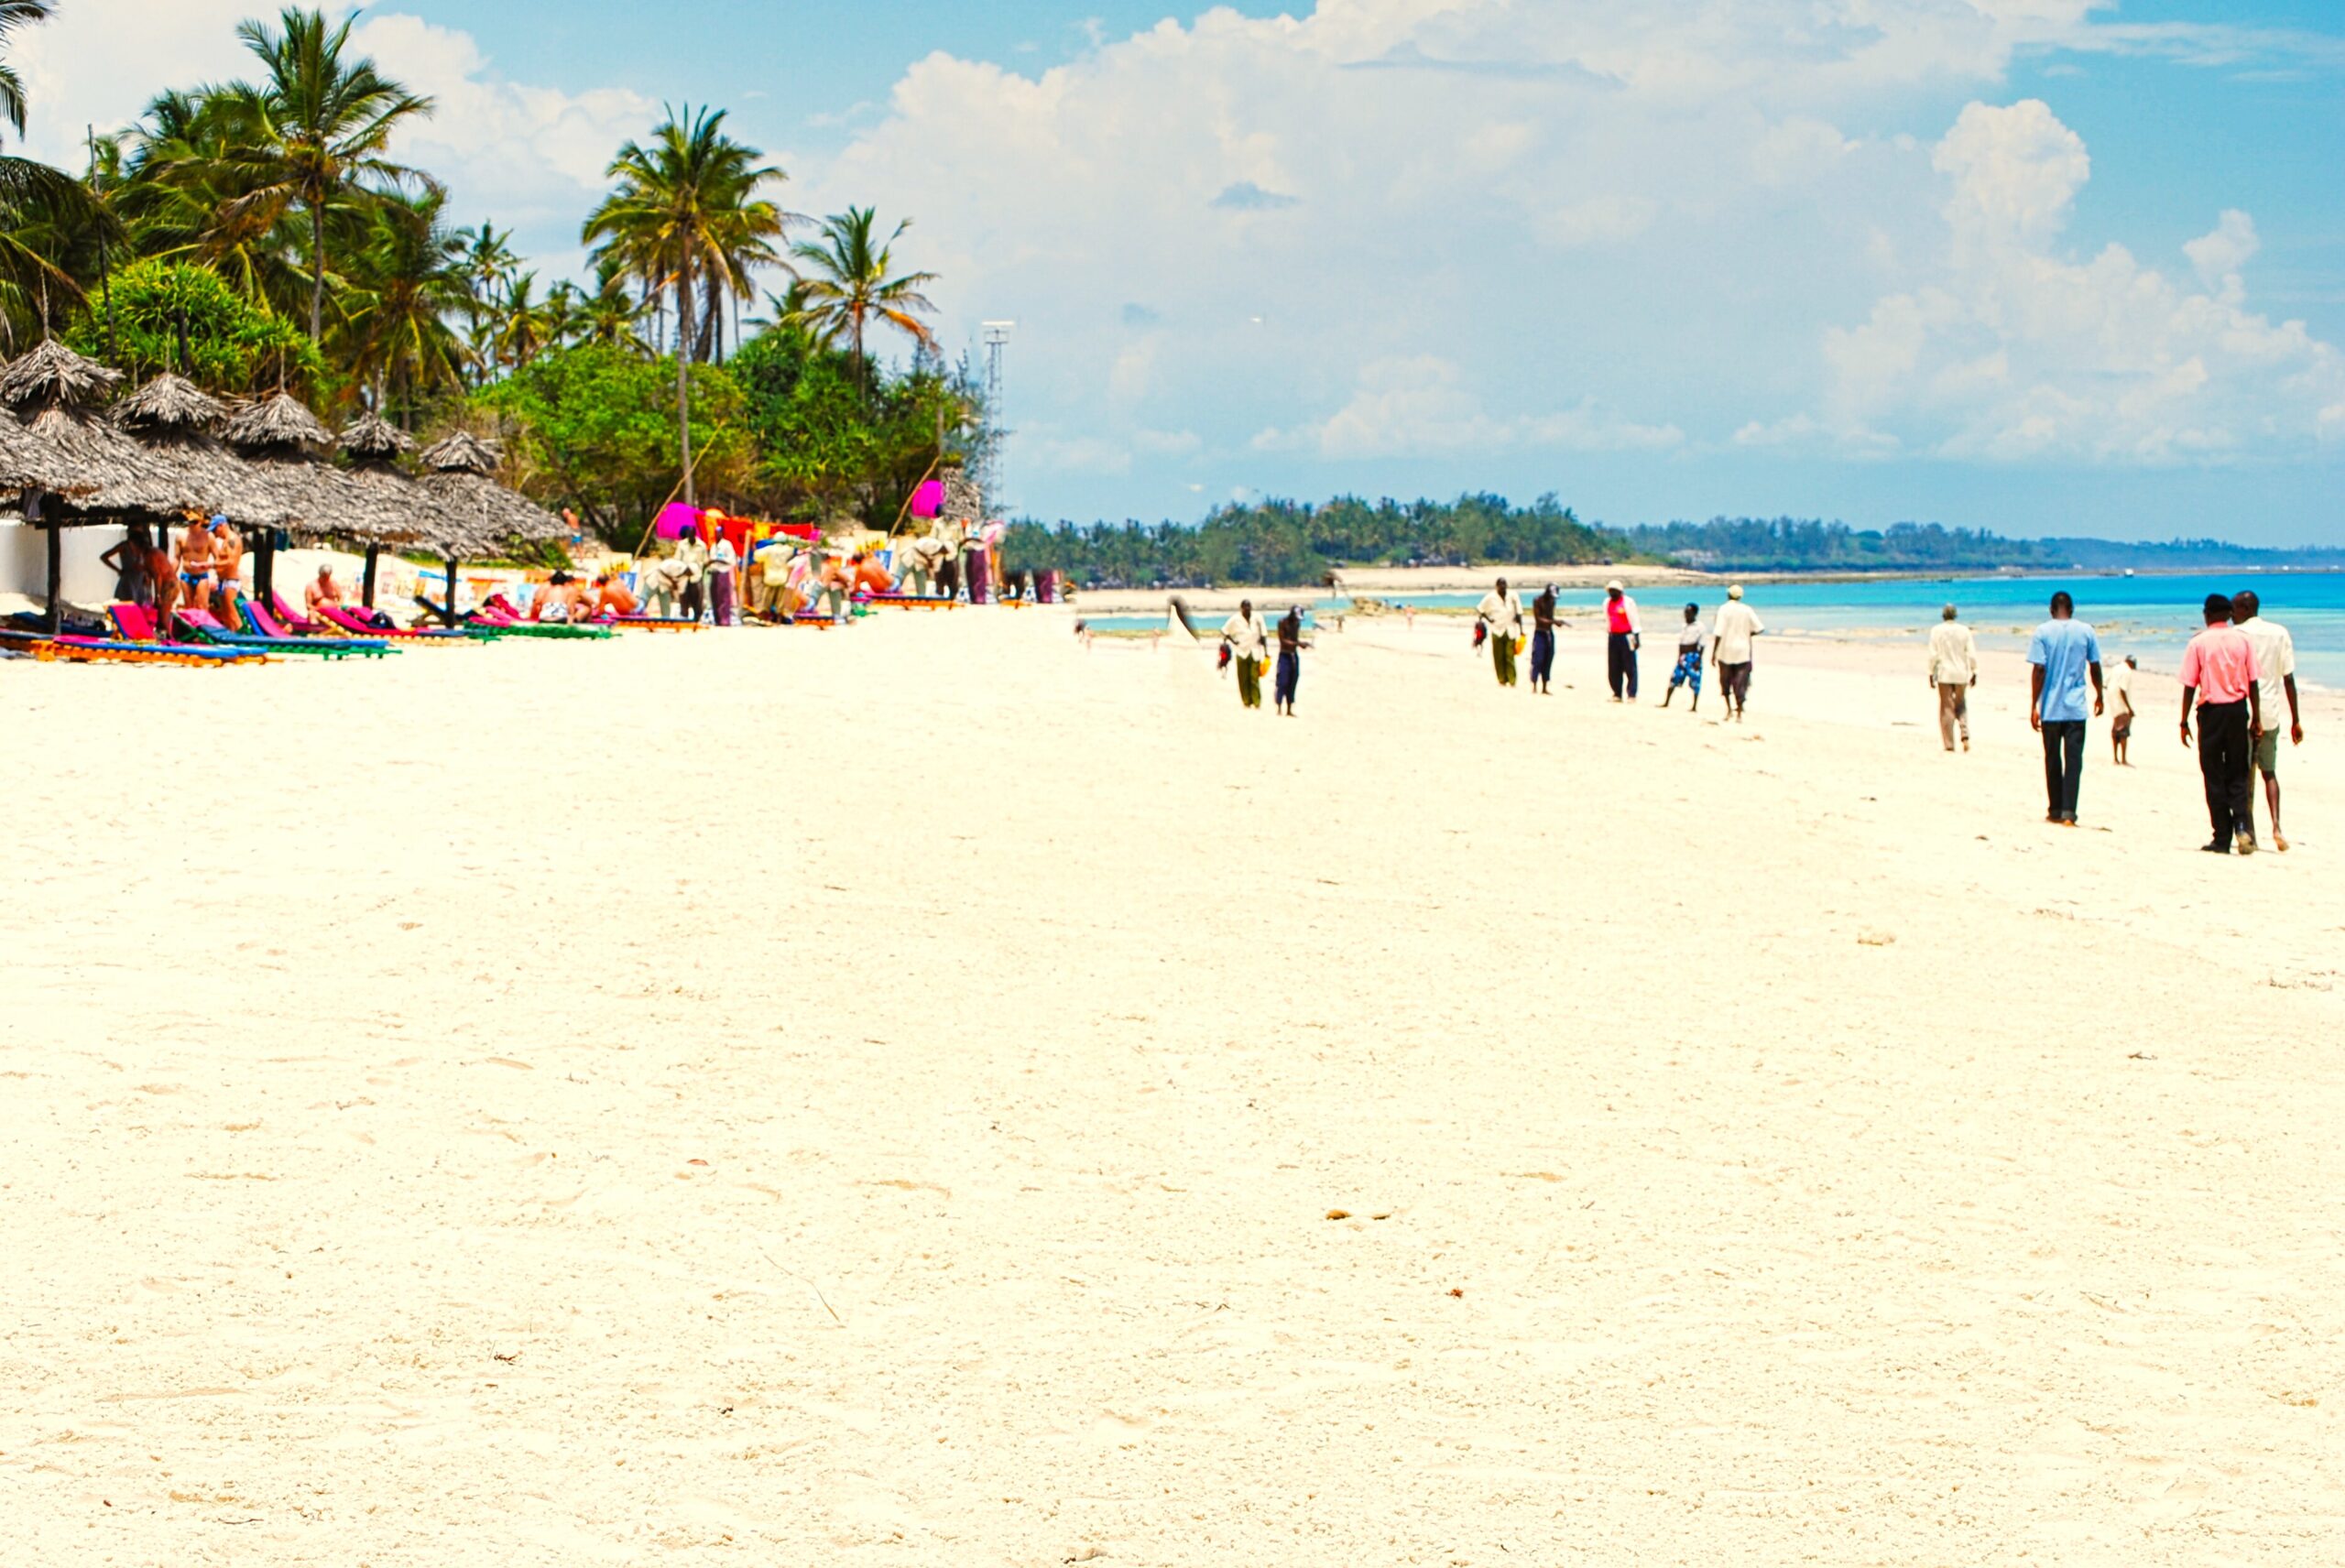 białe plaże charakterystyczne dla Afryki Wschodniej i wybrzeży Kenii czy Zanzibaru